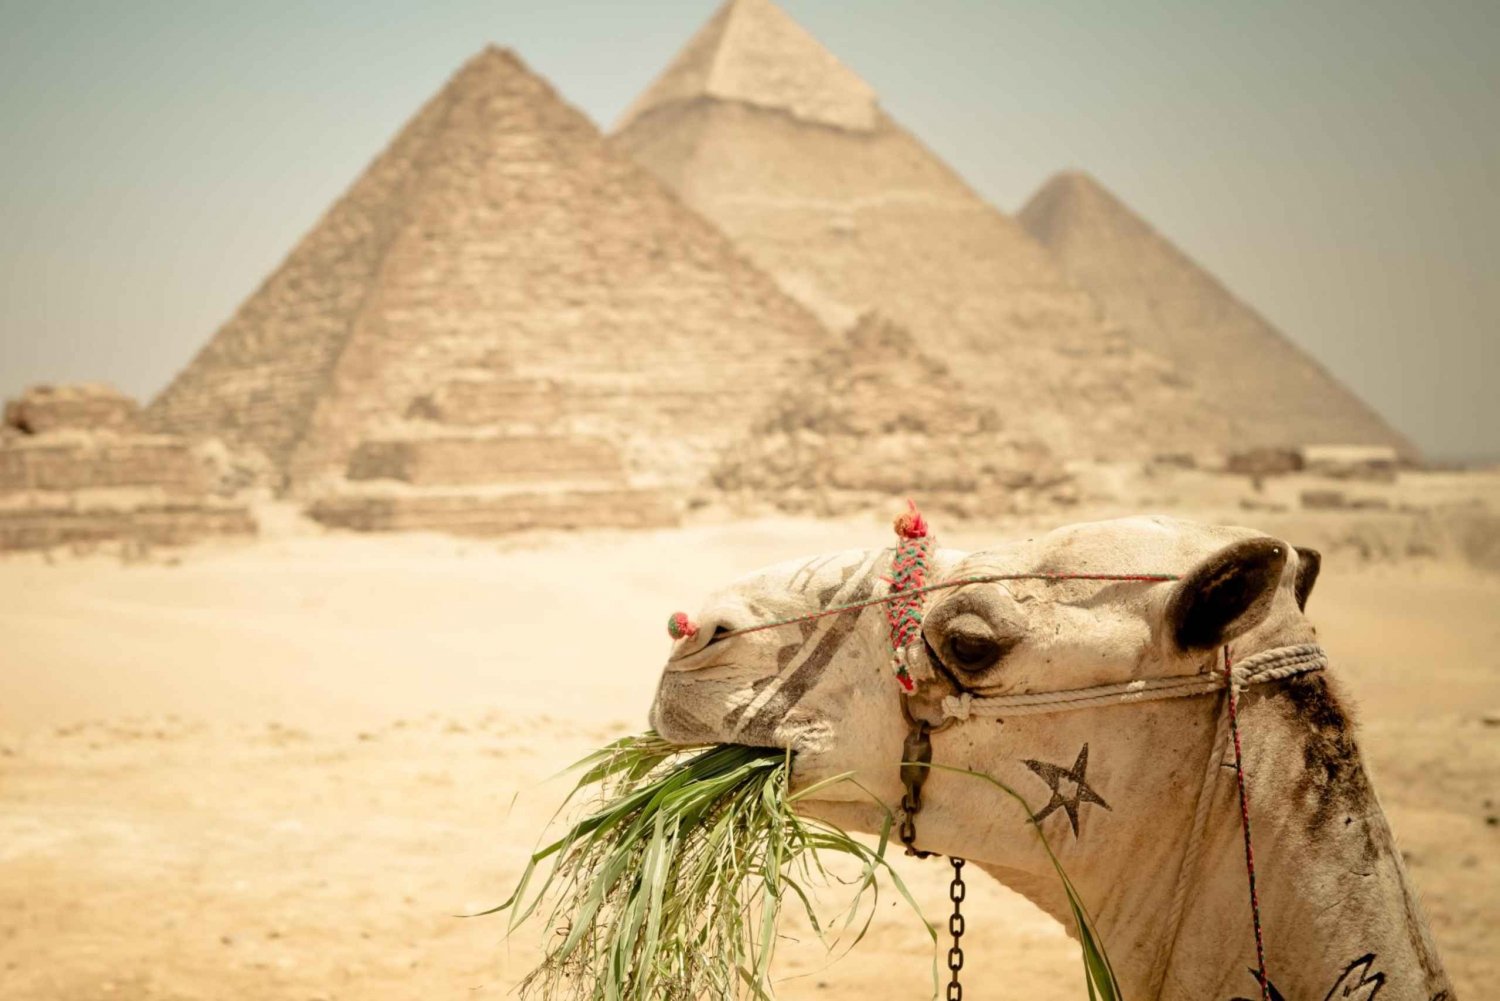 Il Cairo: Tour delle piramidi, giro in barca e pranzo alla Cafelucca